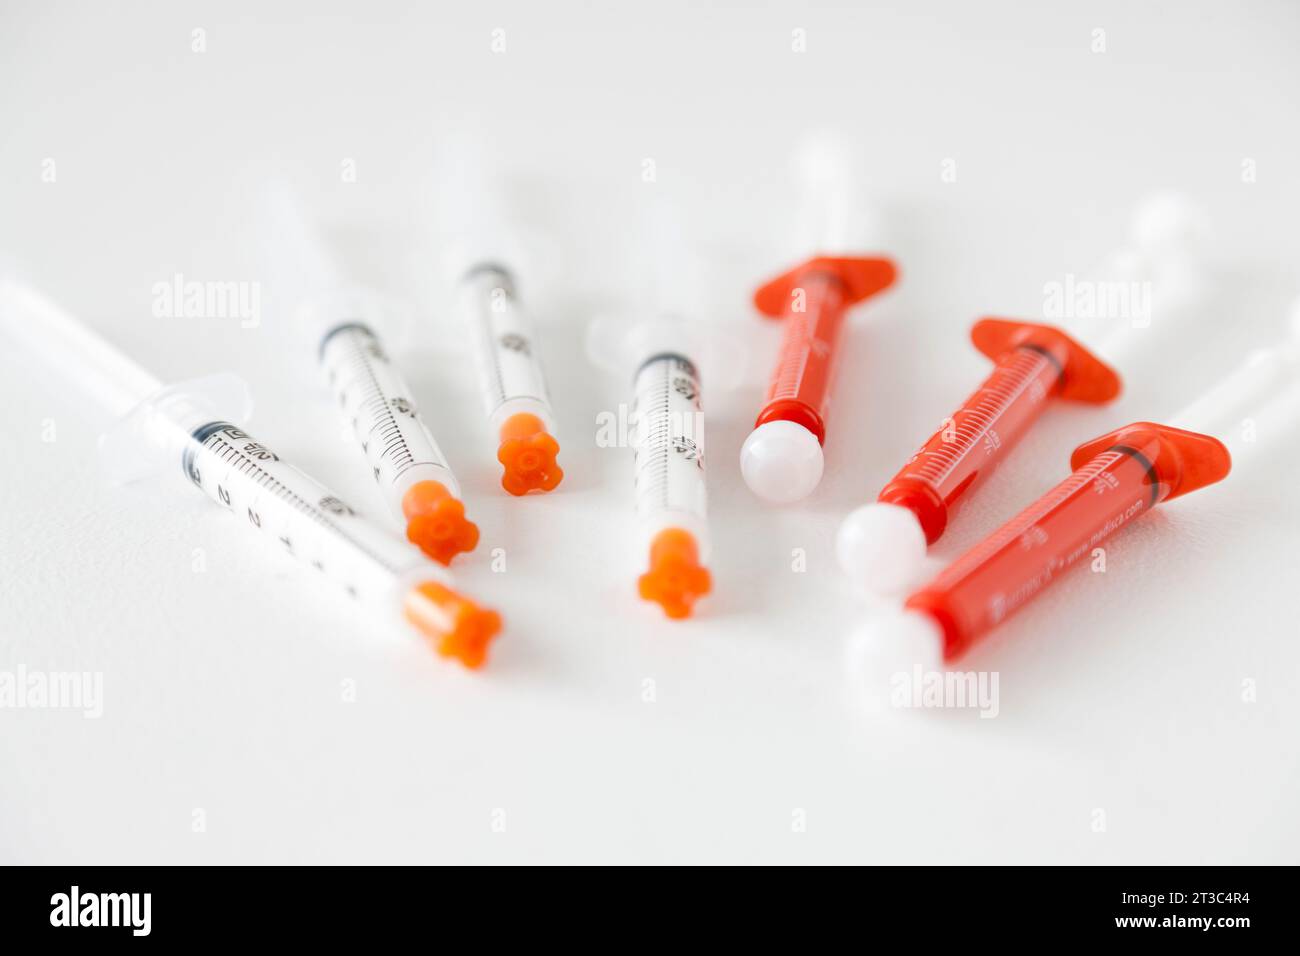 7 syringes on white background Stock Photo